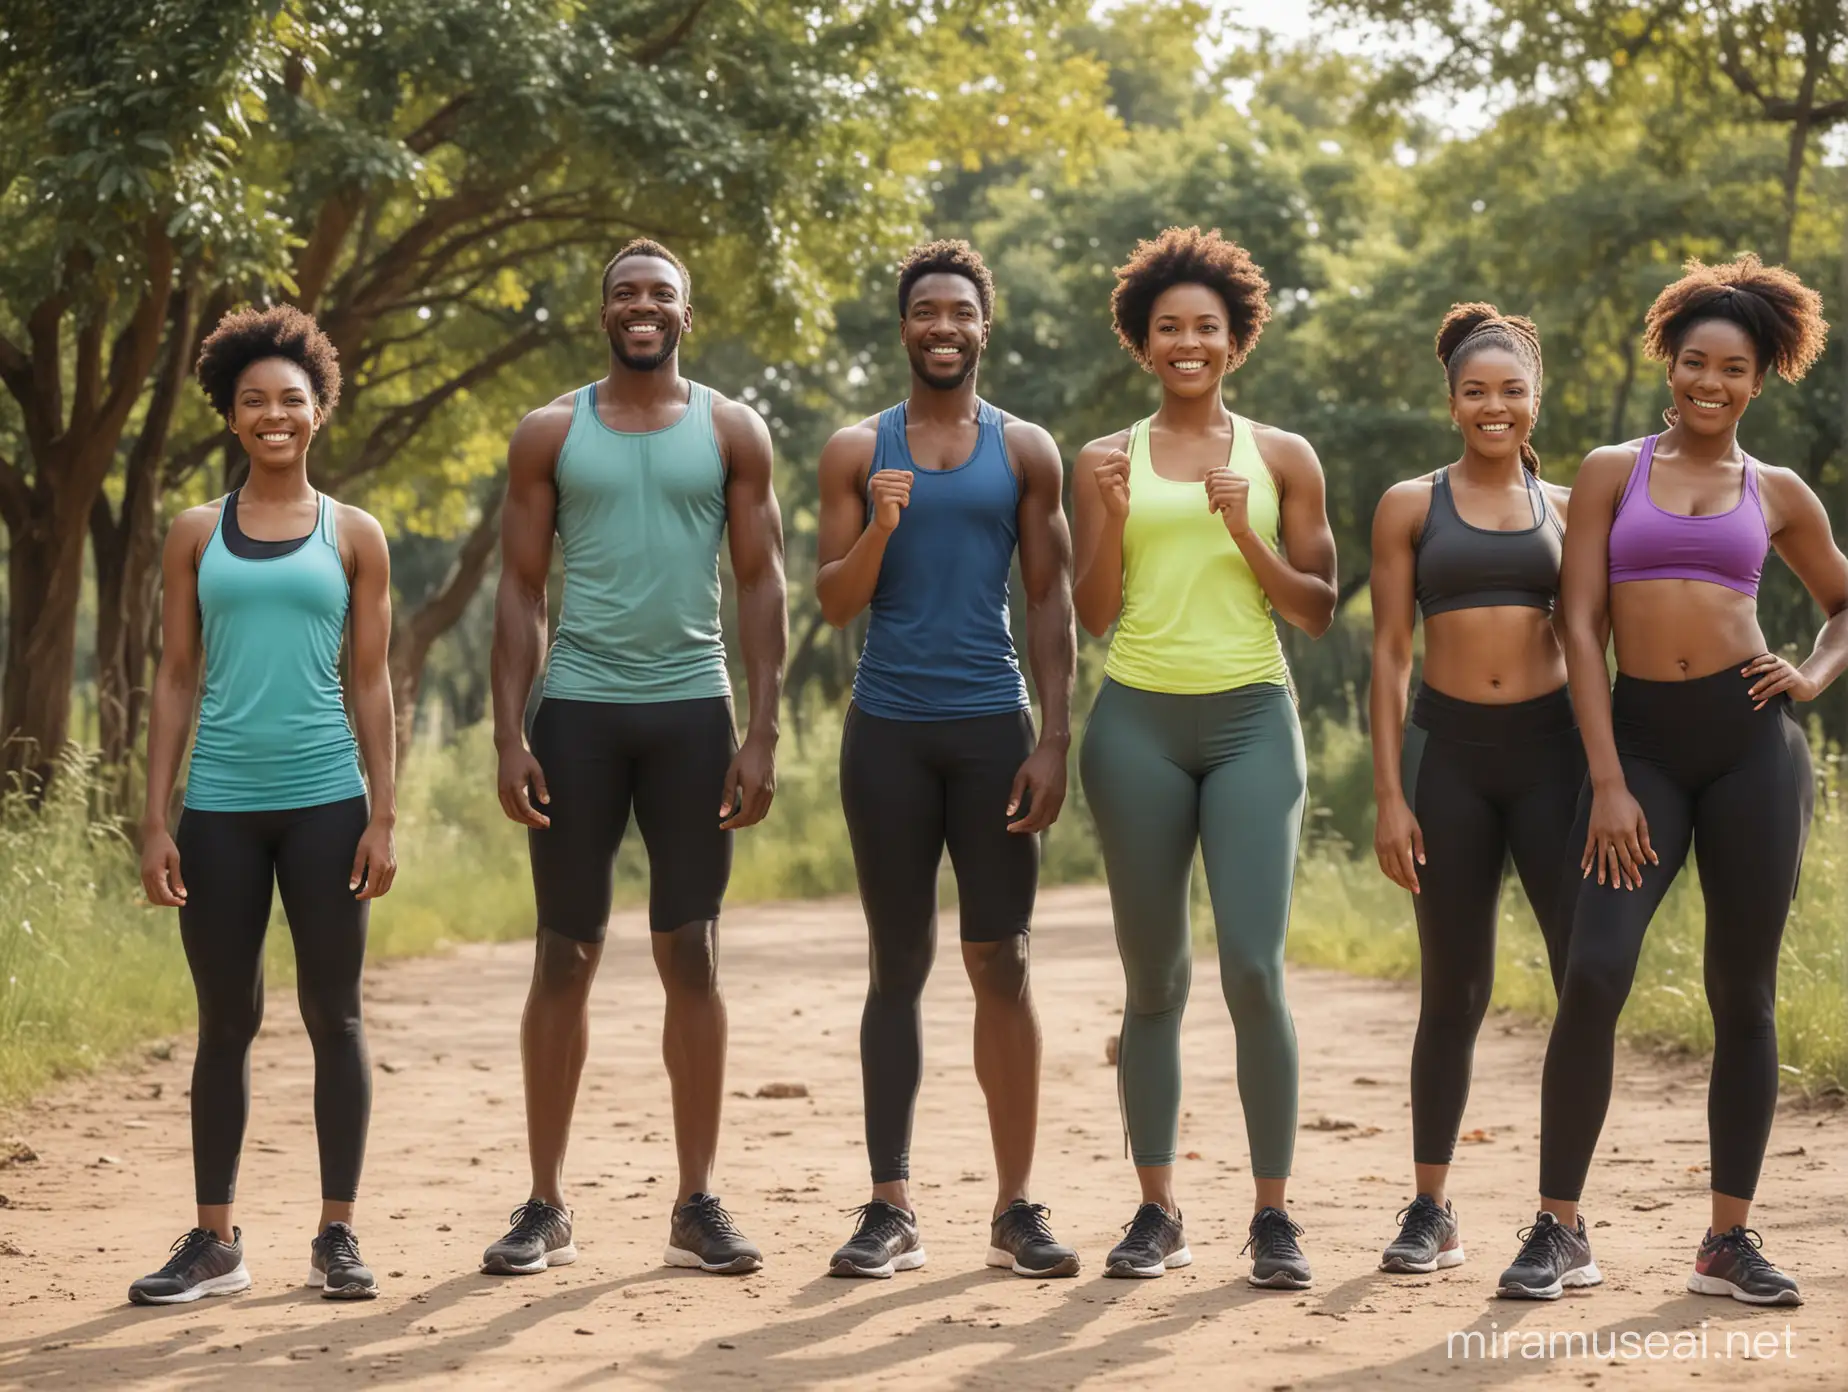 Groupe de personnes africaines, heureux de faire du fitness en plein air.